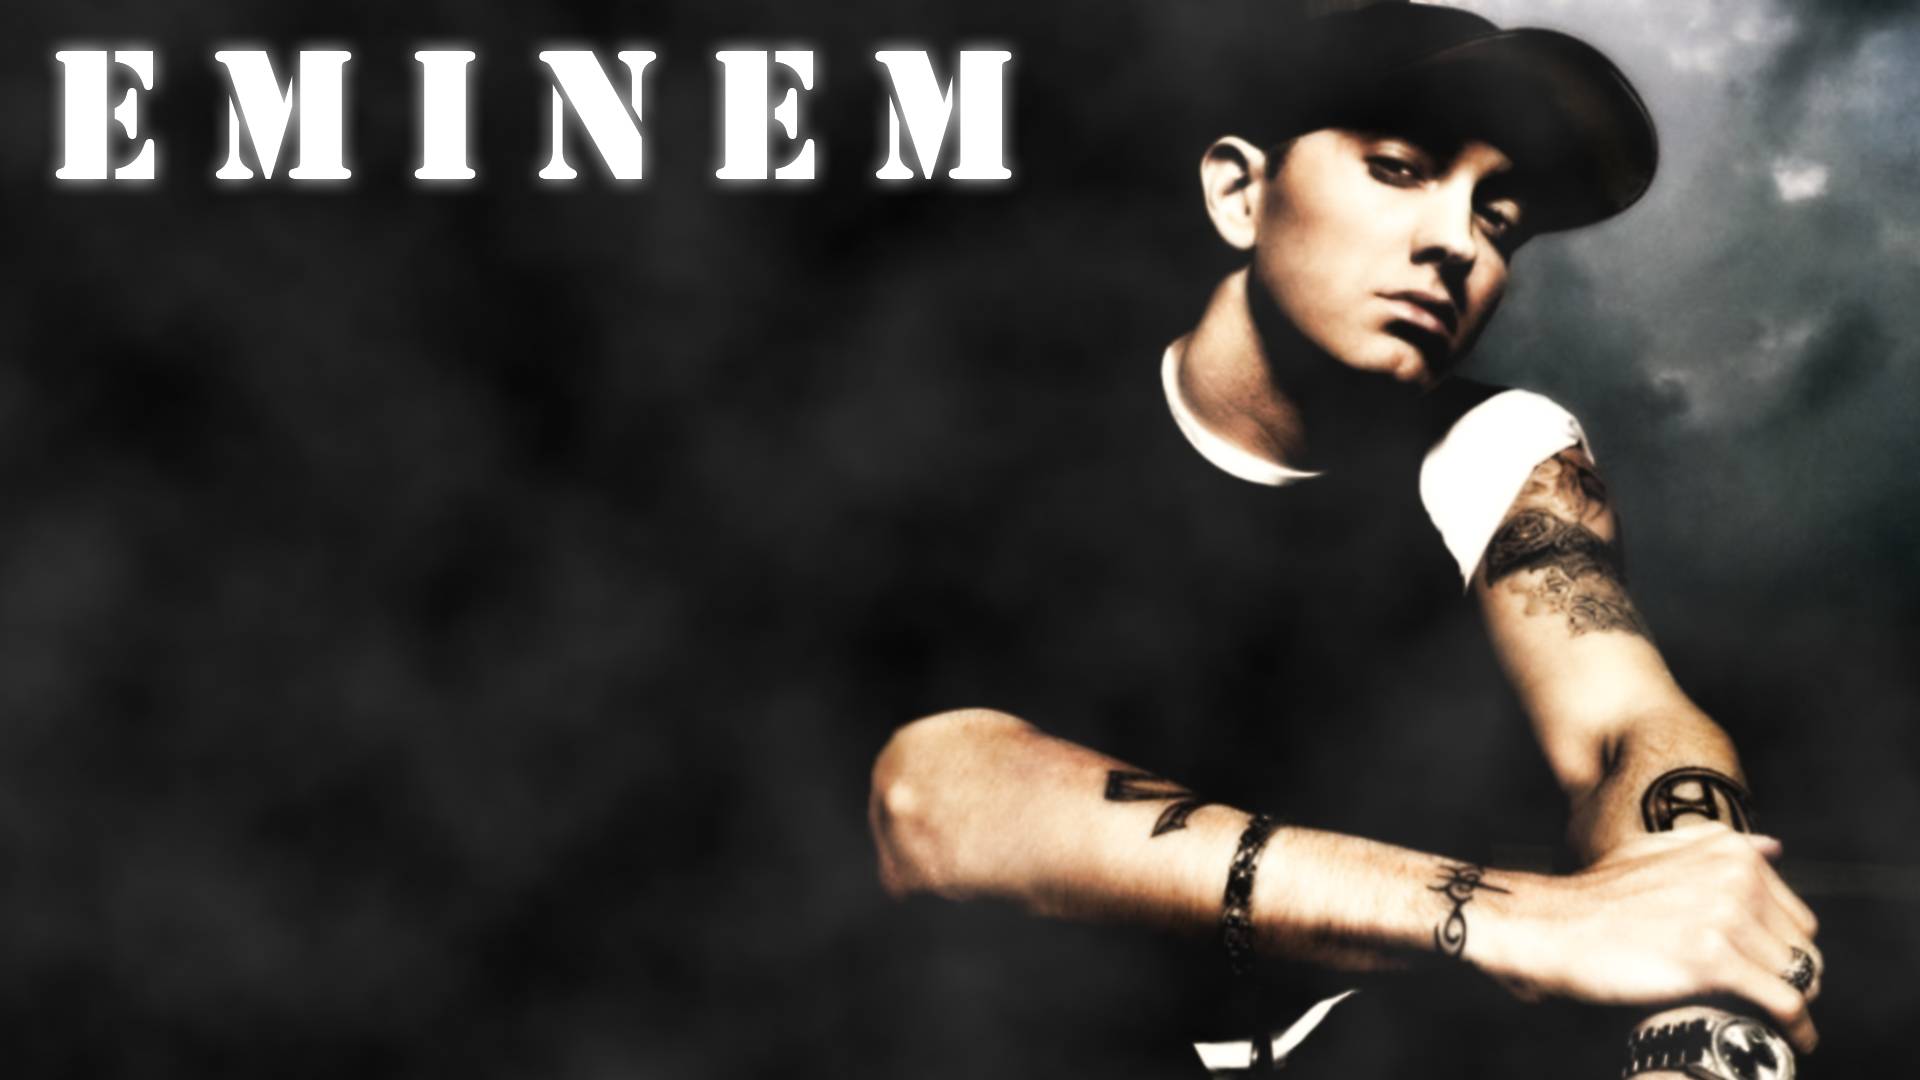 Free download Eminem HD 1920 Eminem Wallpaper [1920x1080] for your